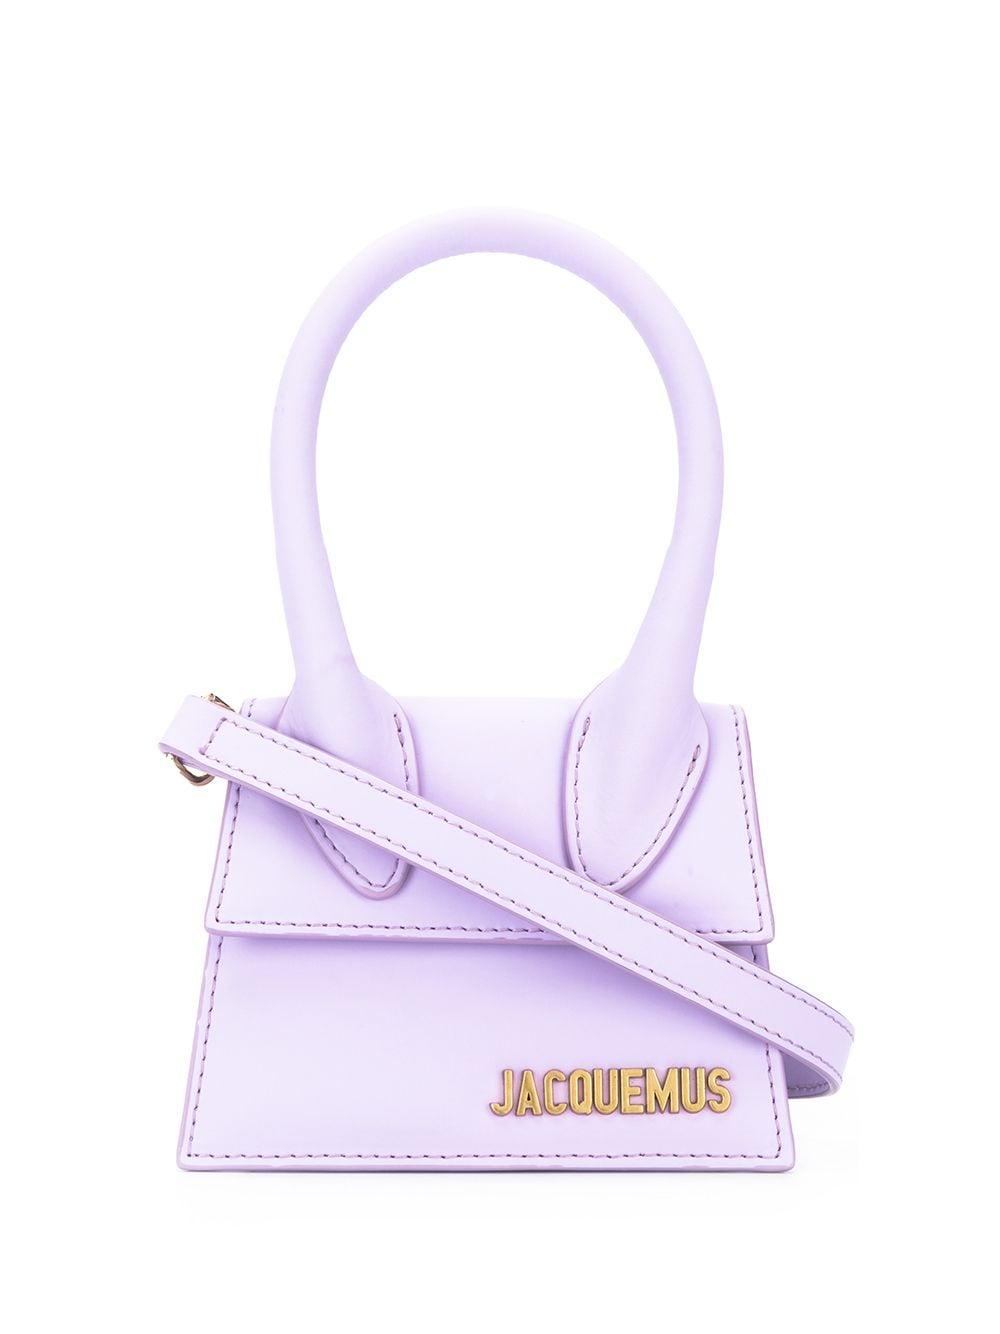 Jacquemus Le Chiquito Mini Bag in Purple